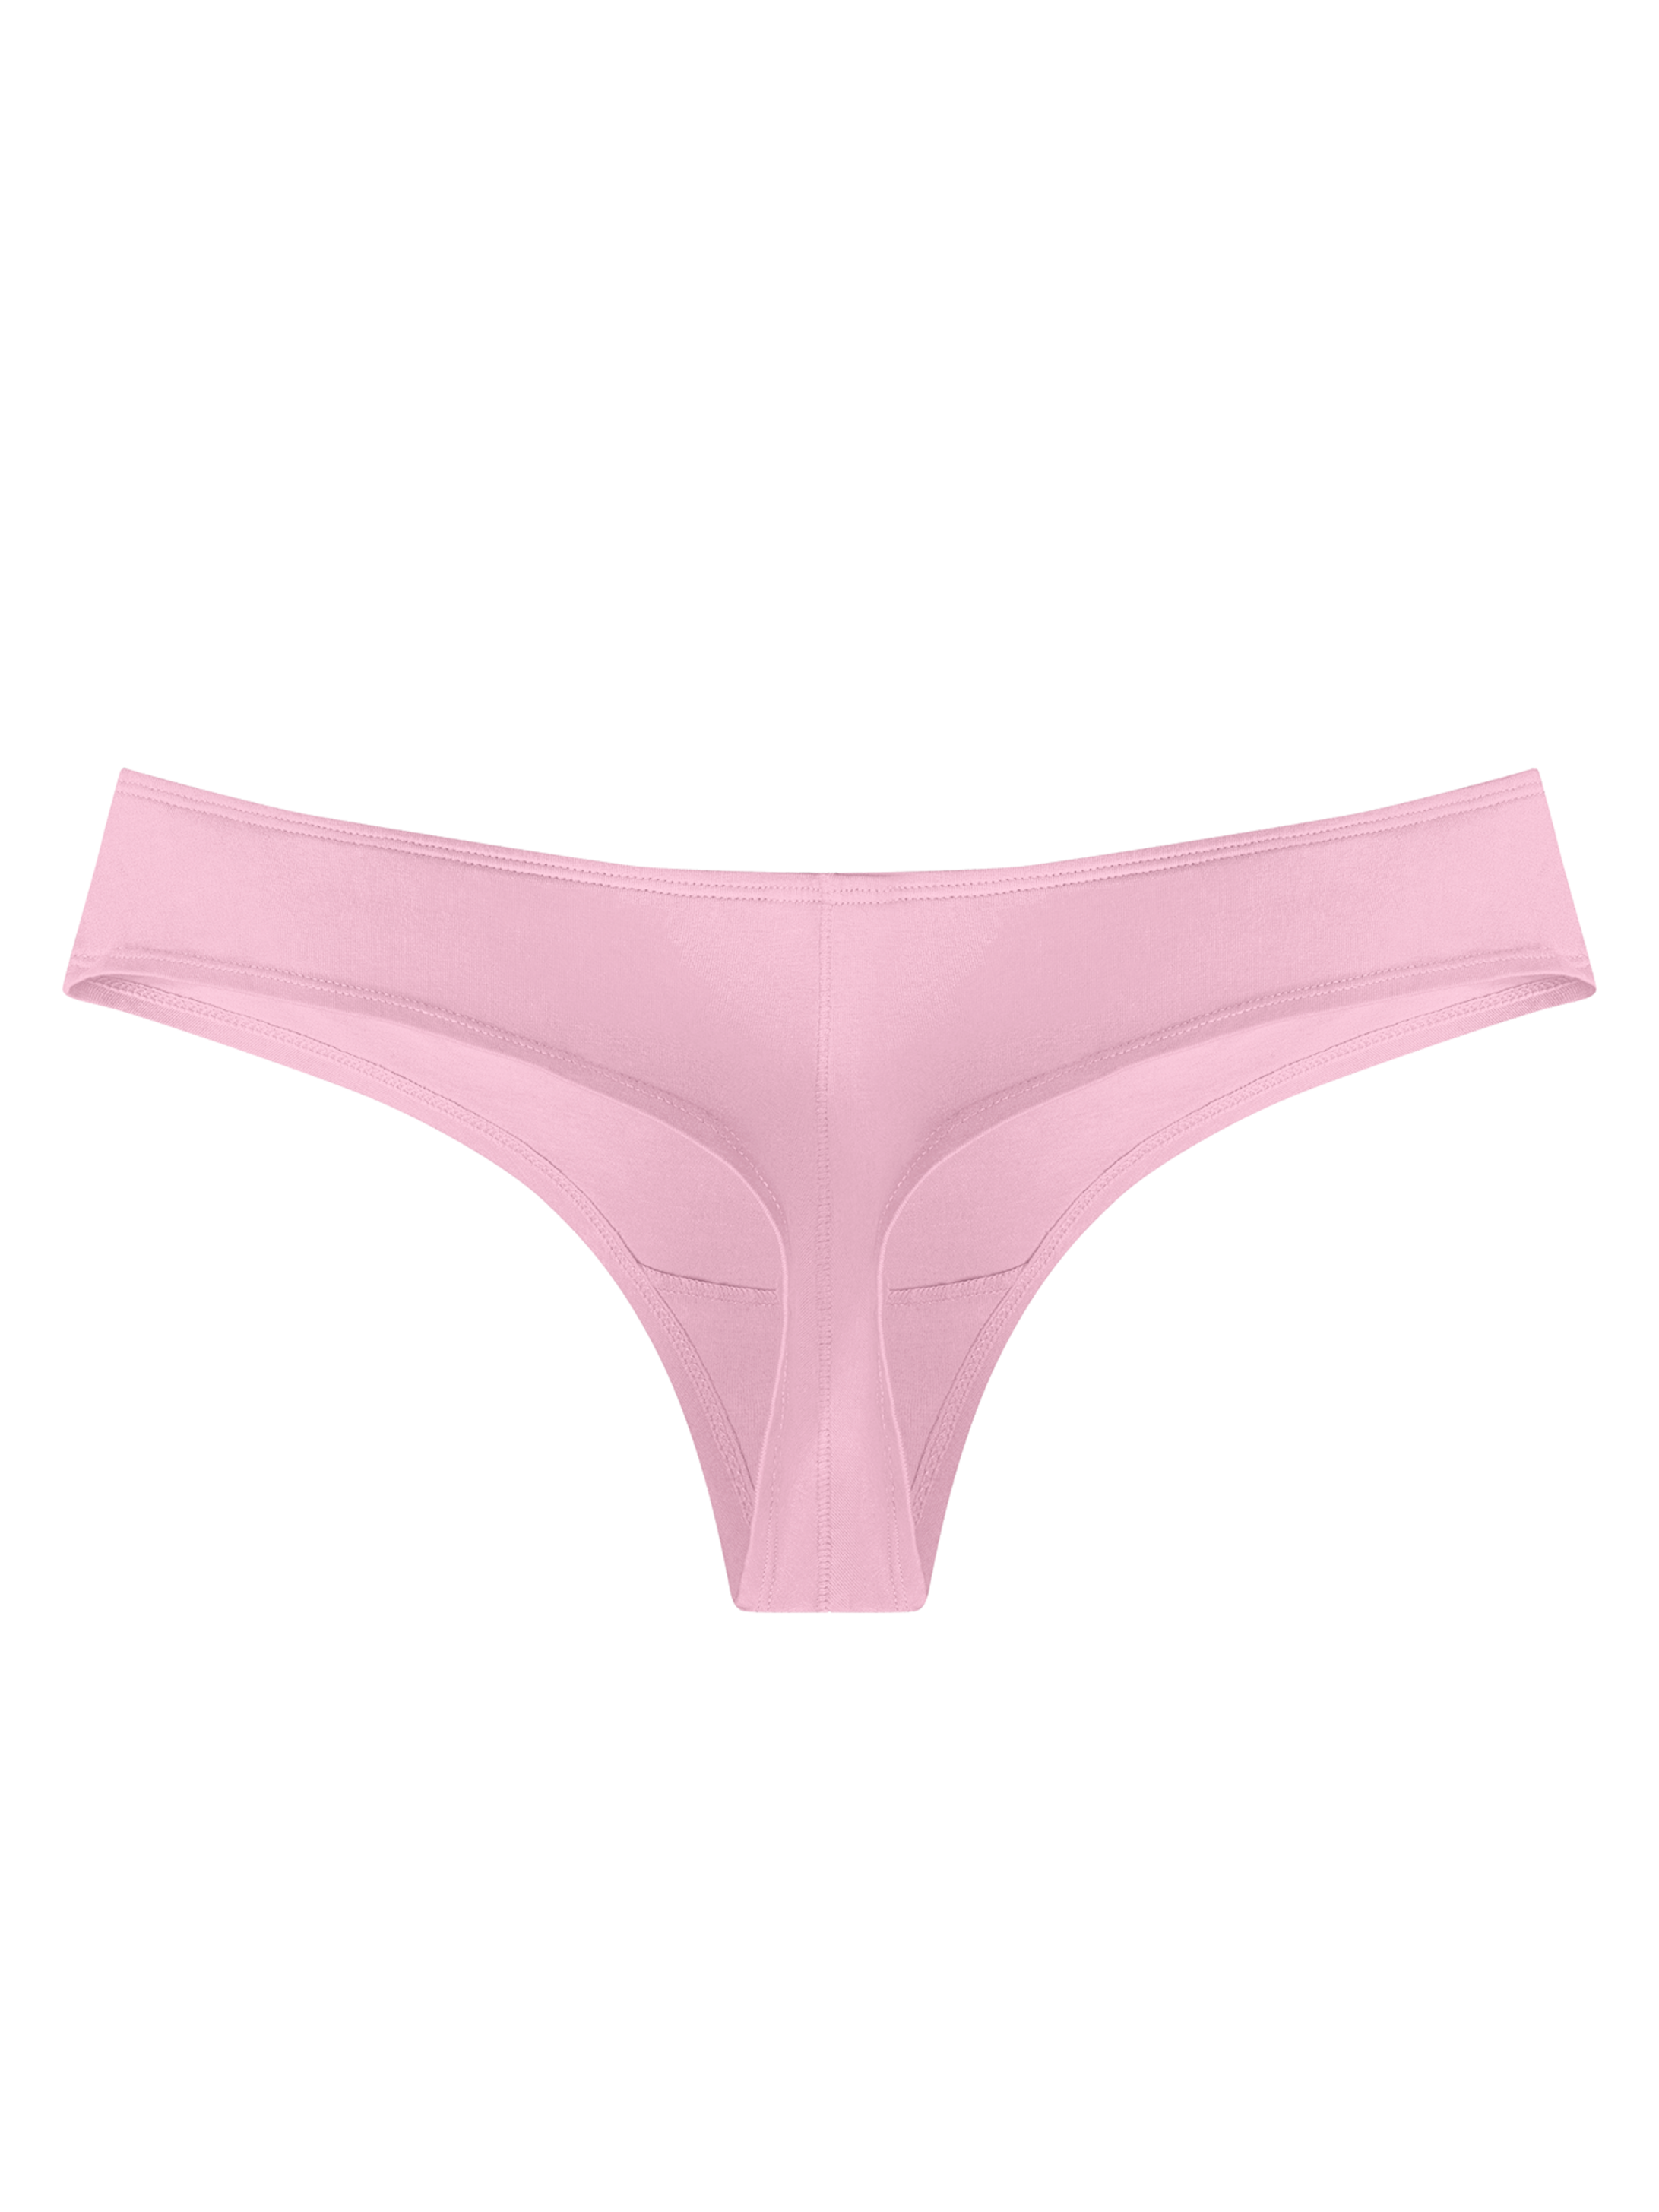 Pastel Pink Women S Brazilian Panties Dedoles